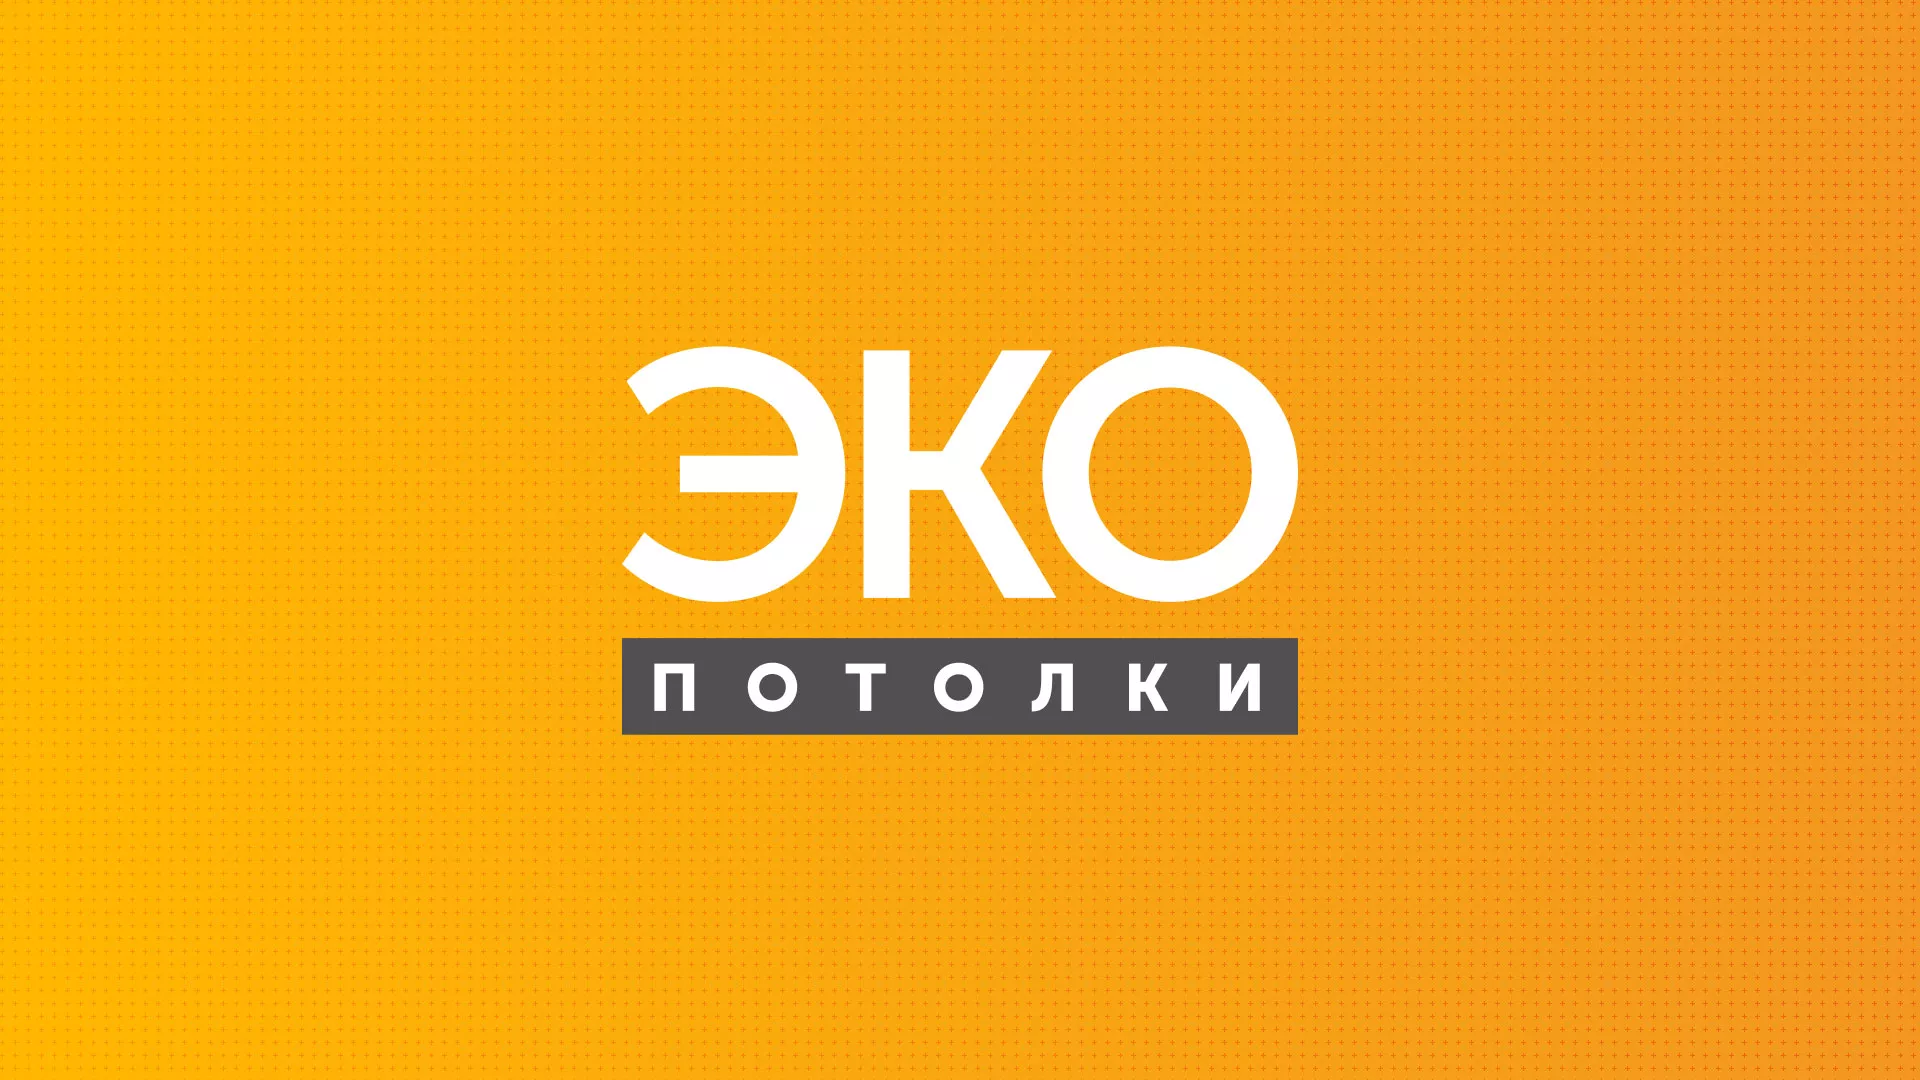 Разработка сайта по натяжным потолкам «Эко Потолки» в Казани